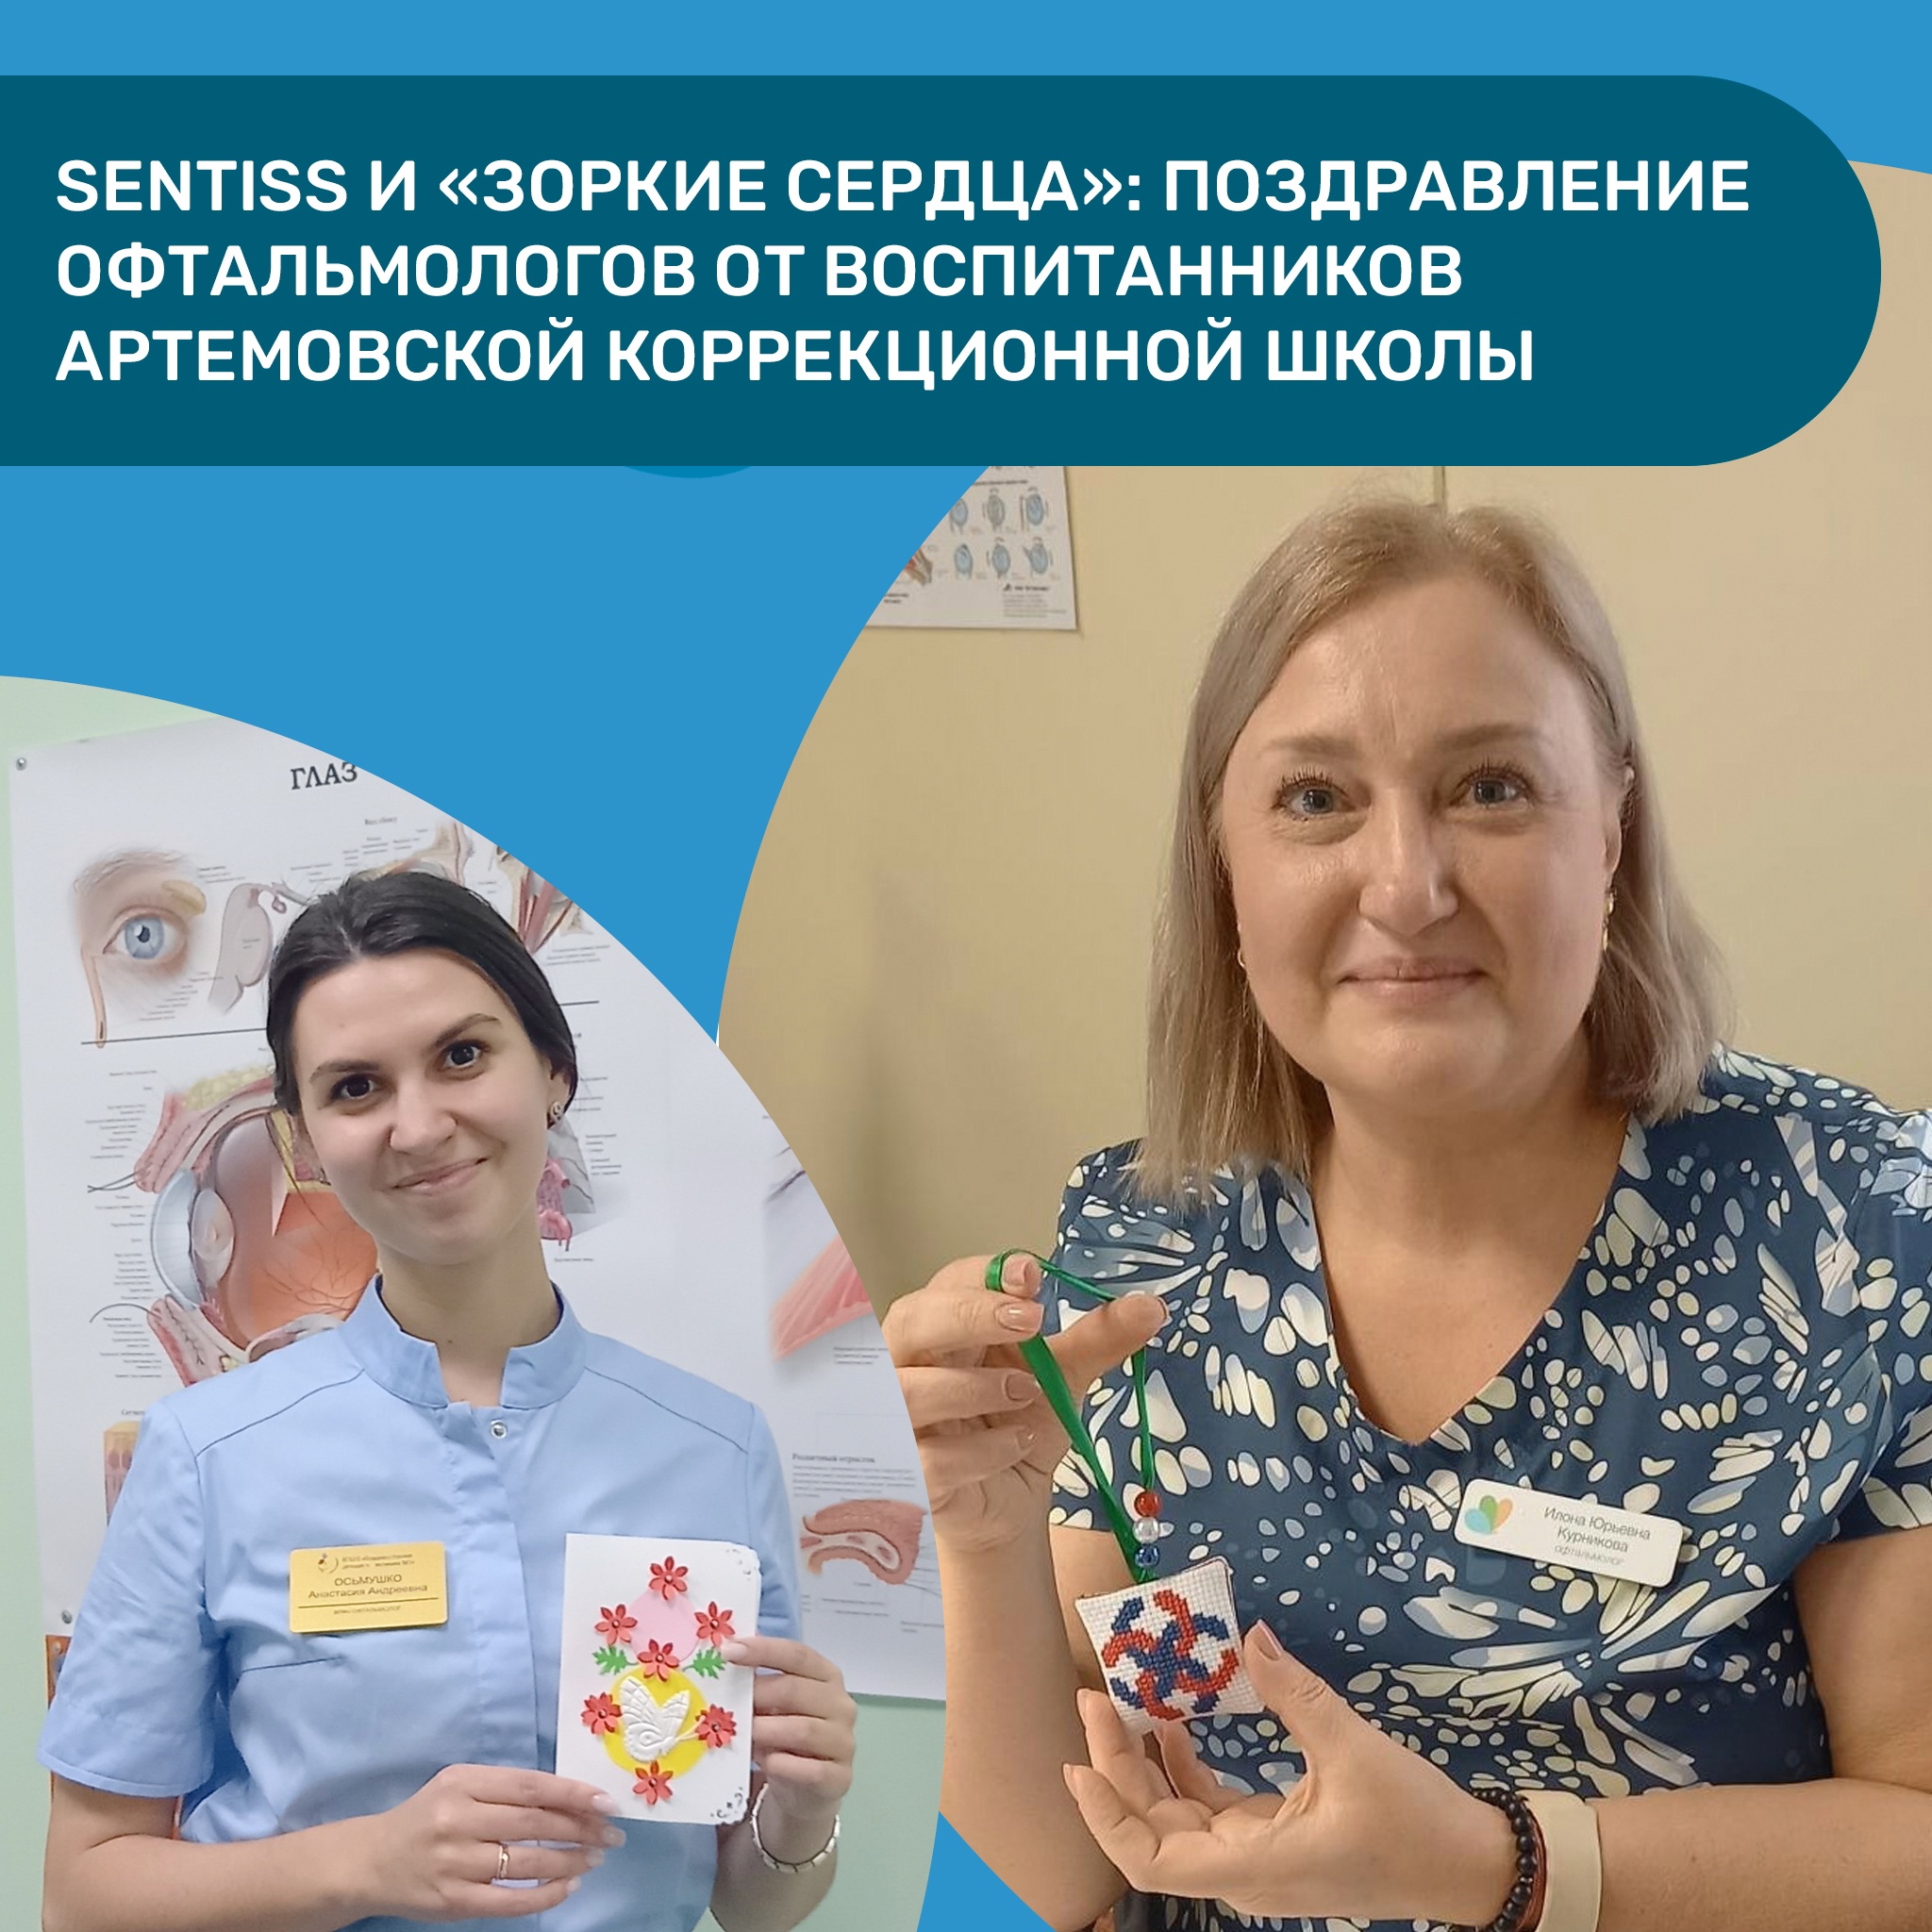 Поздравление офтальмологов от воспитанников Артемовской коррекционной школы